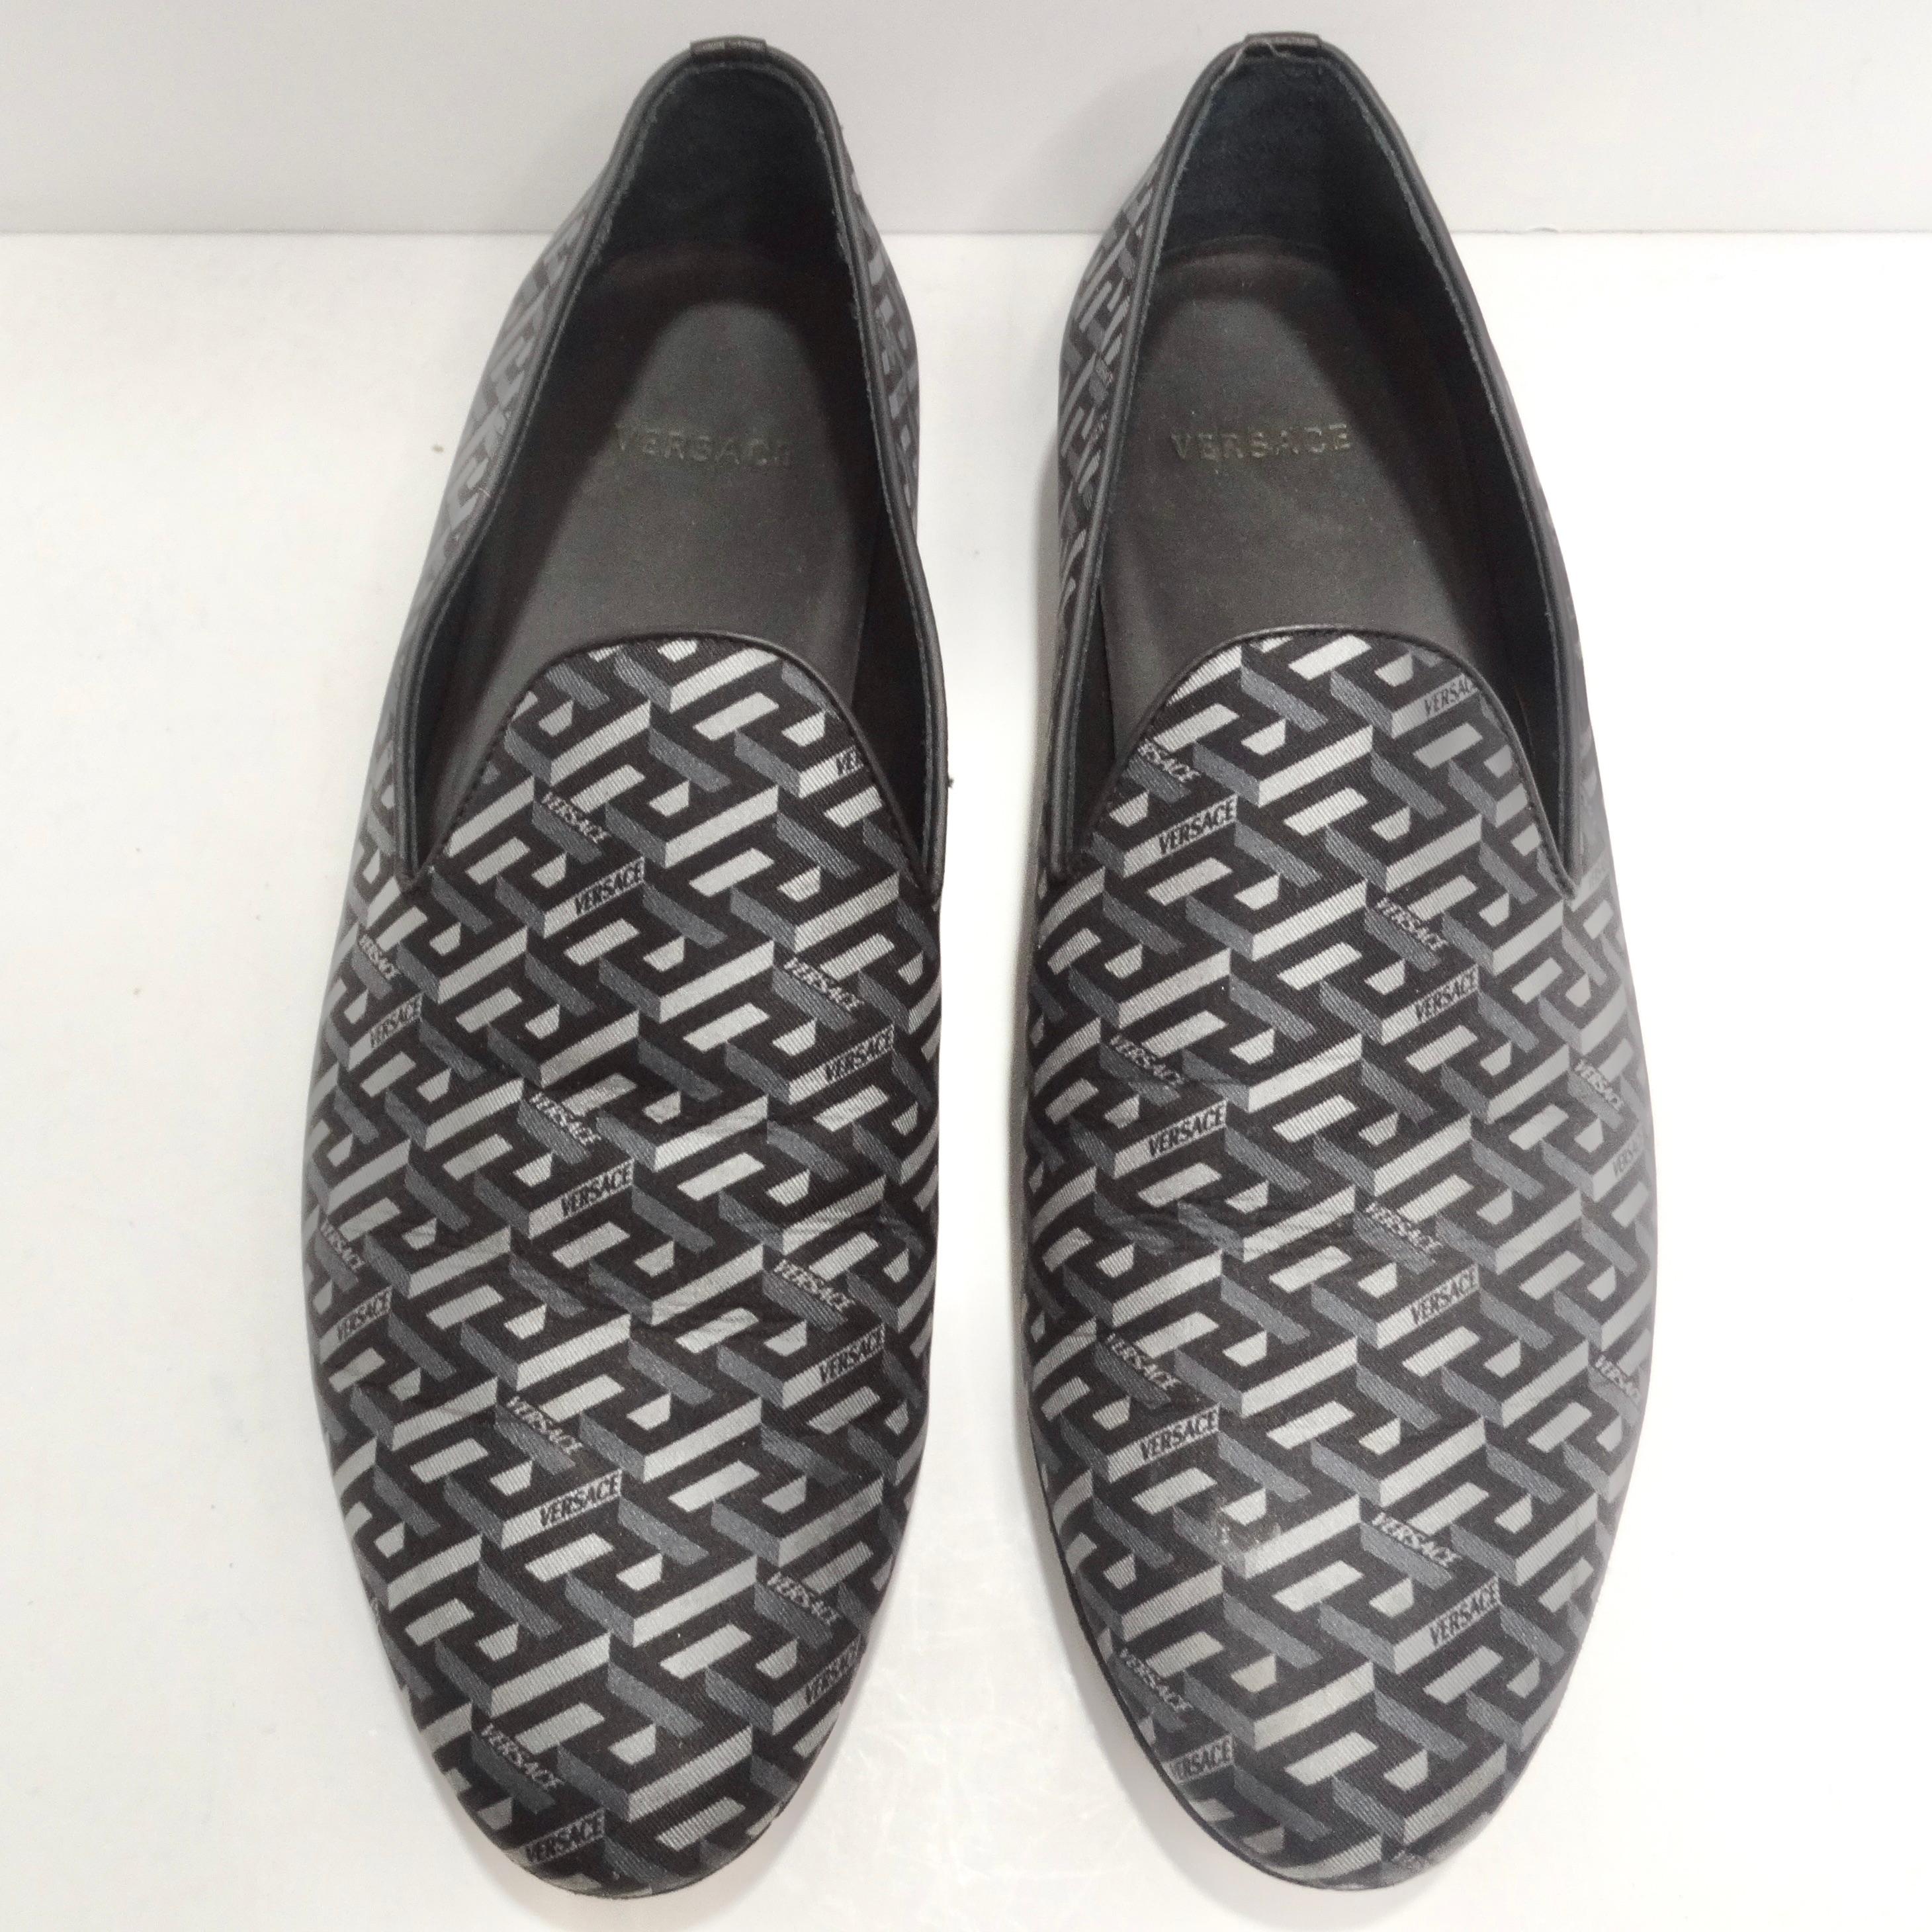 Wir stellen die Versace La Greca Jacquard Loafers vor - ein Paar elegante Slipper, die nahtlos klassischen Stil mit einem kühnen Versace-Touch verbinden. Diese Loafer sind nicht einfach nur Schuhe, sie sind ein Statement für zeitlose Raffinesse und